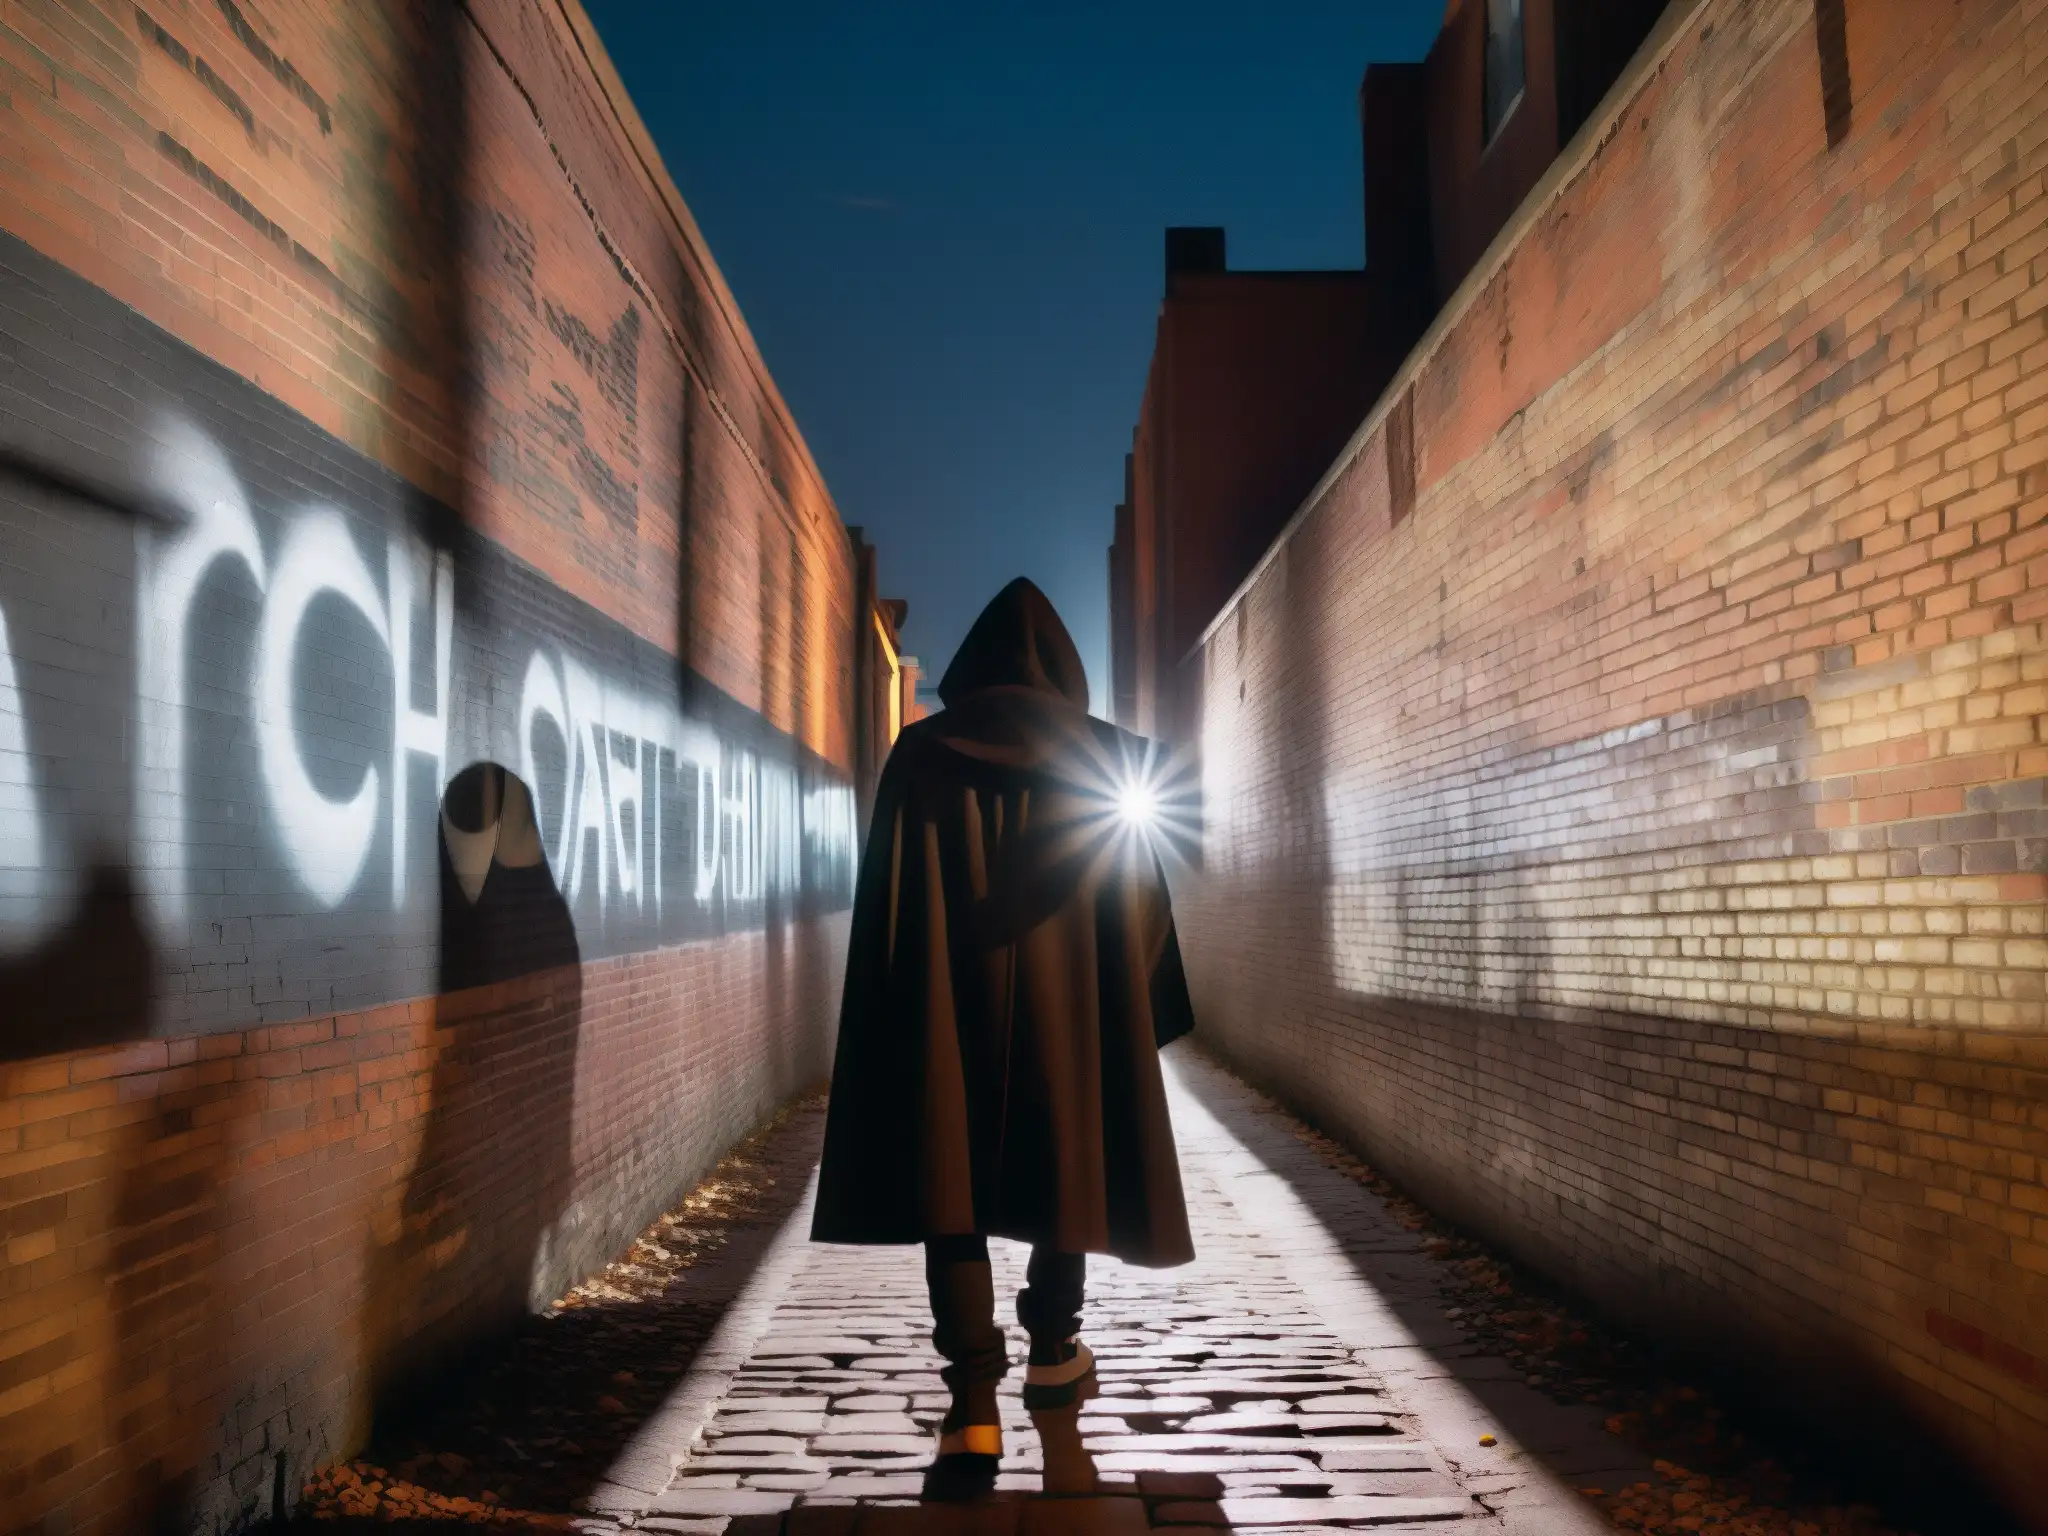 Exploración de mitos y leyendas urbanas en un callejón oscuro con grafitis y una figura en la sombra tocando un símbolo misterioso